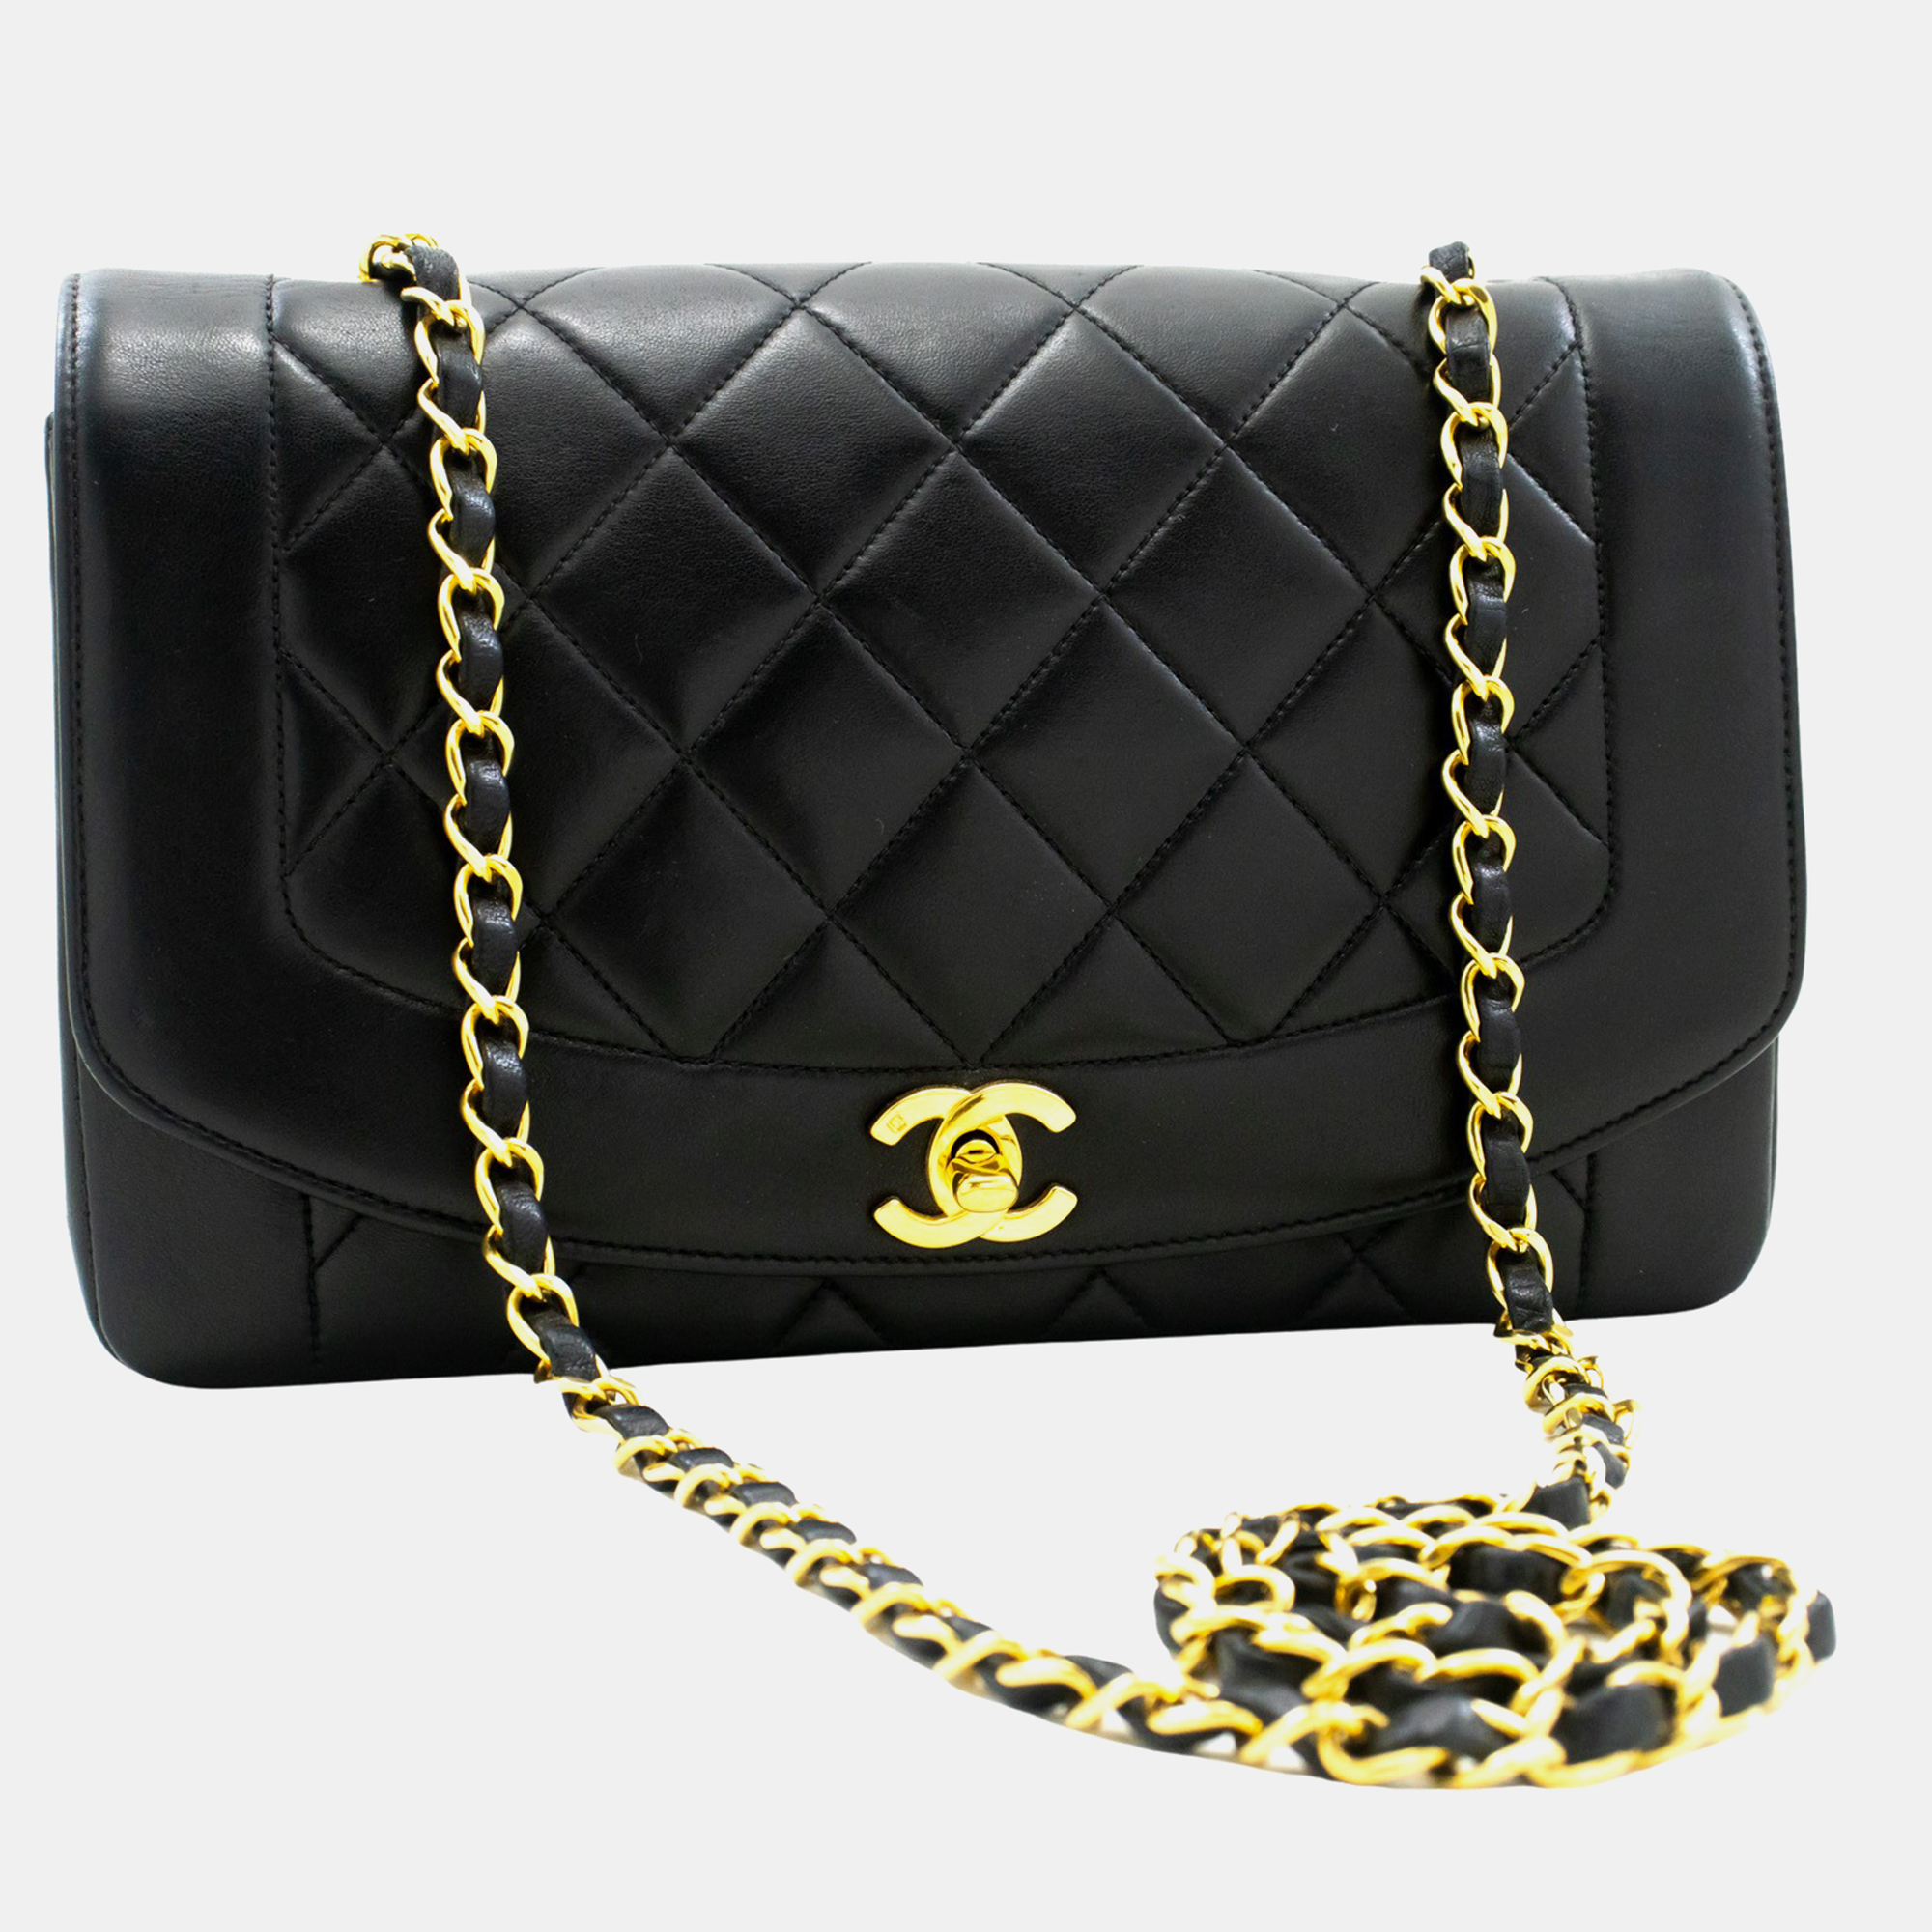 Chanel black leather vintage double flap bag